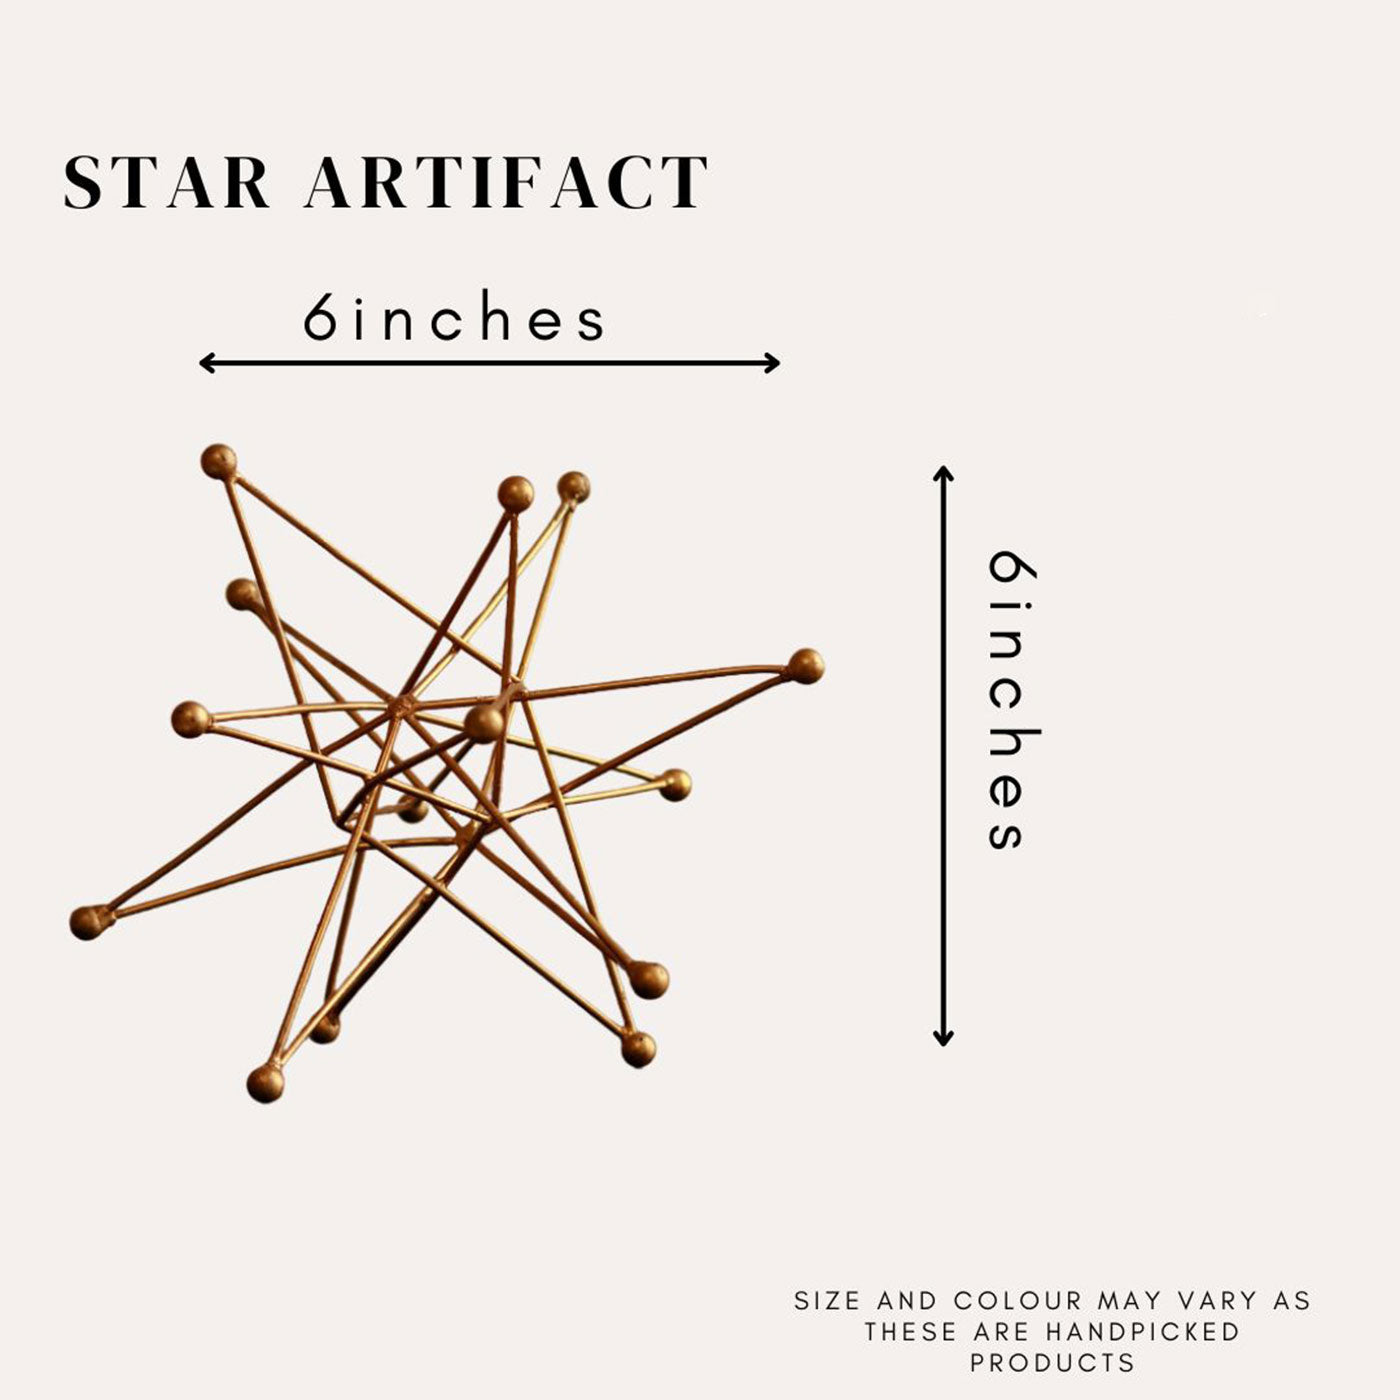 Star Artifact